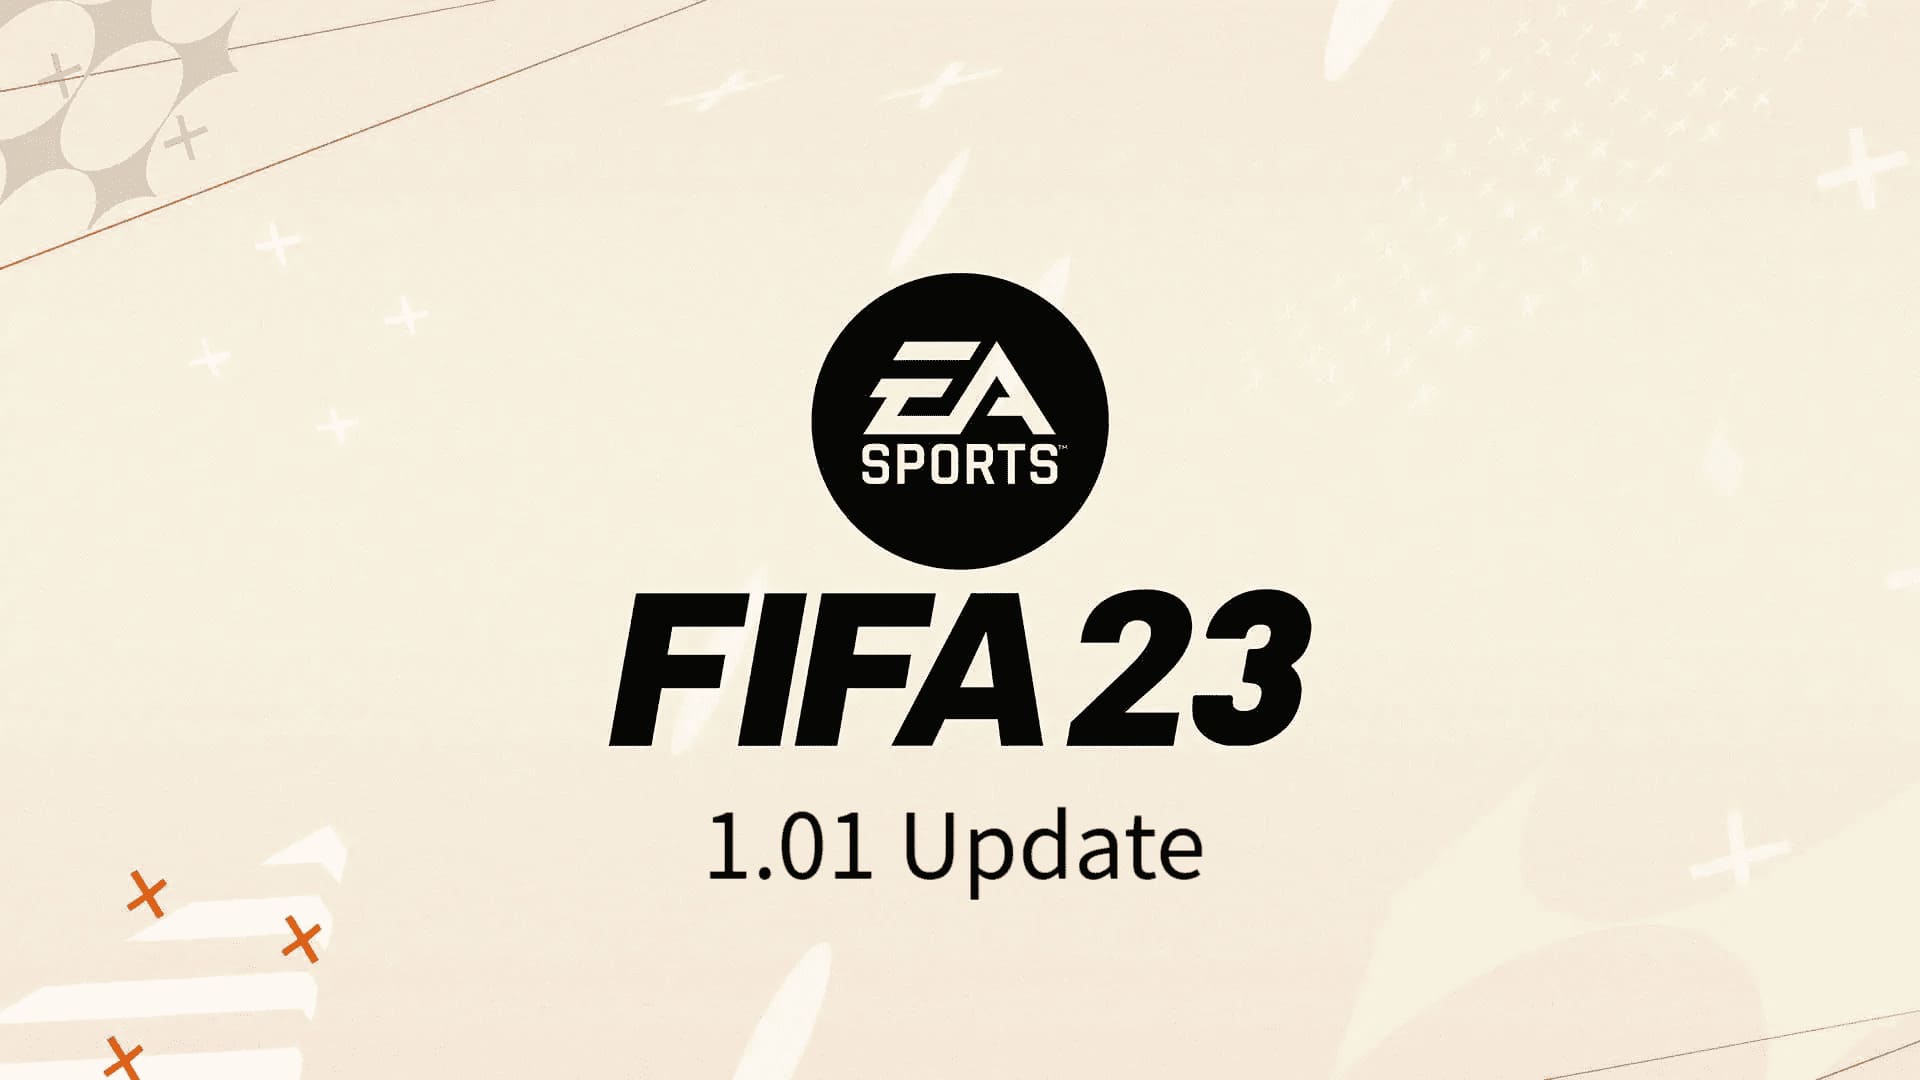 تحميل التحديث الأول لفيفا 23 FIFA